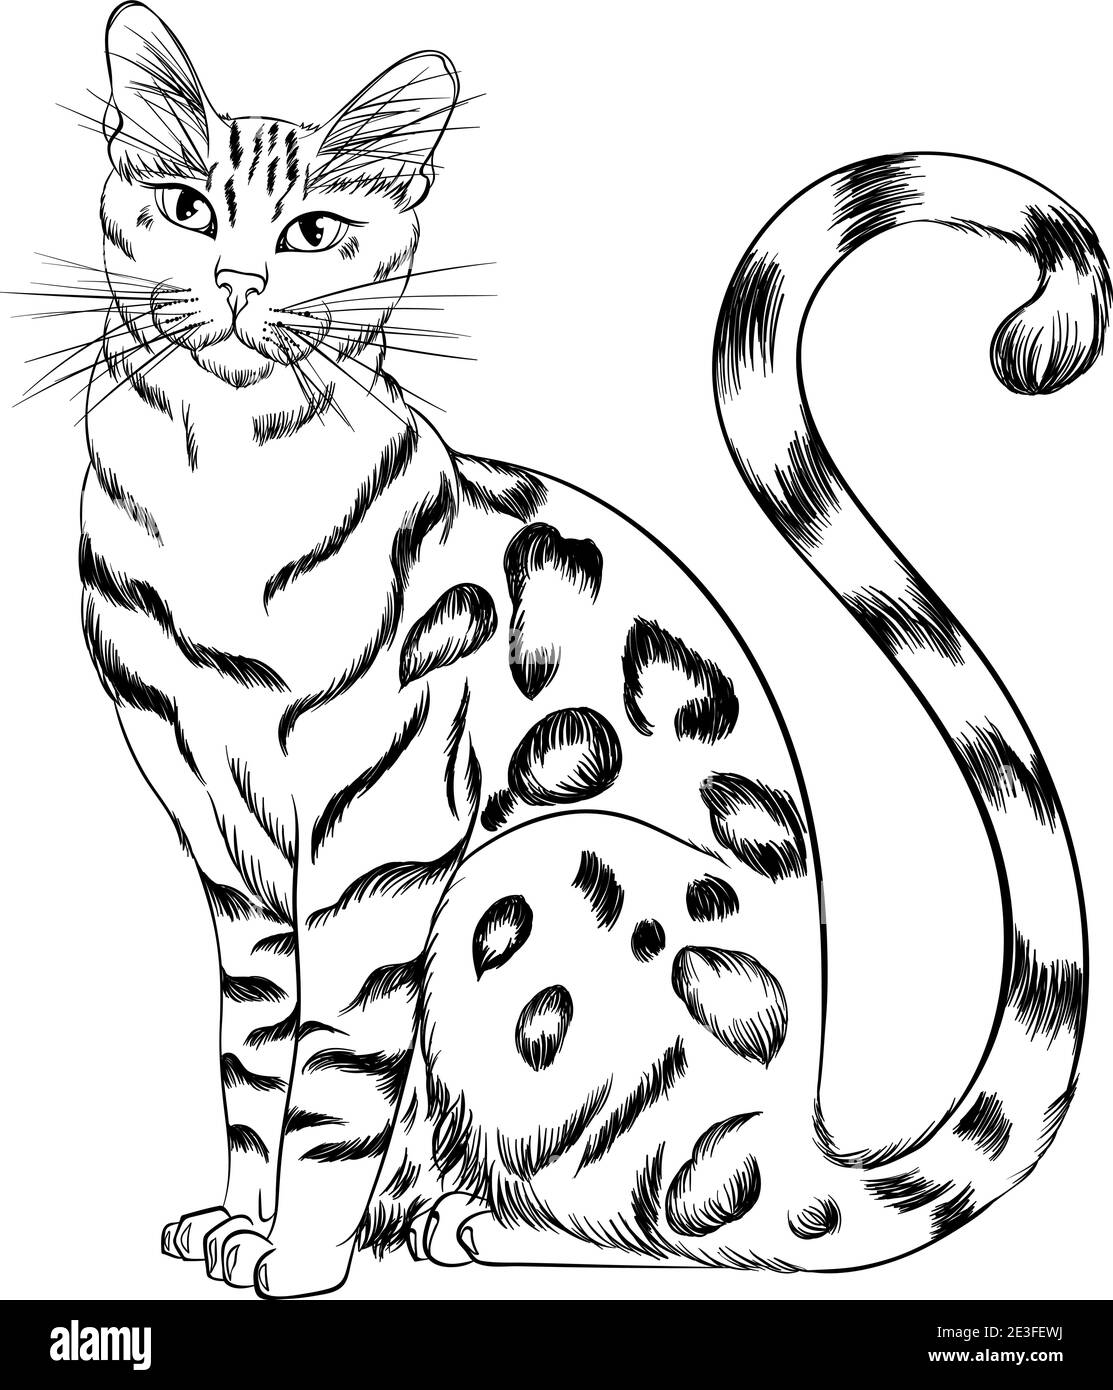 Sitzende Katze Rasse Bengalen freuen uns. Linie Kunst Vektor Illustration geeignet für Malbuch Seite. Drucken Sie im Handzeichnen-Stil isoliert auf weißem Hintergrund. Flauschige Katze im schlichten Skizzenstil. Stock Vektor